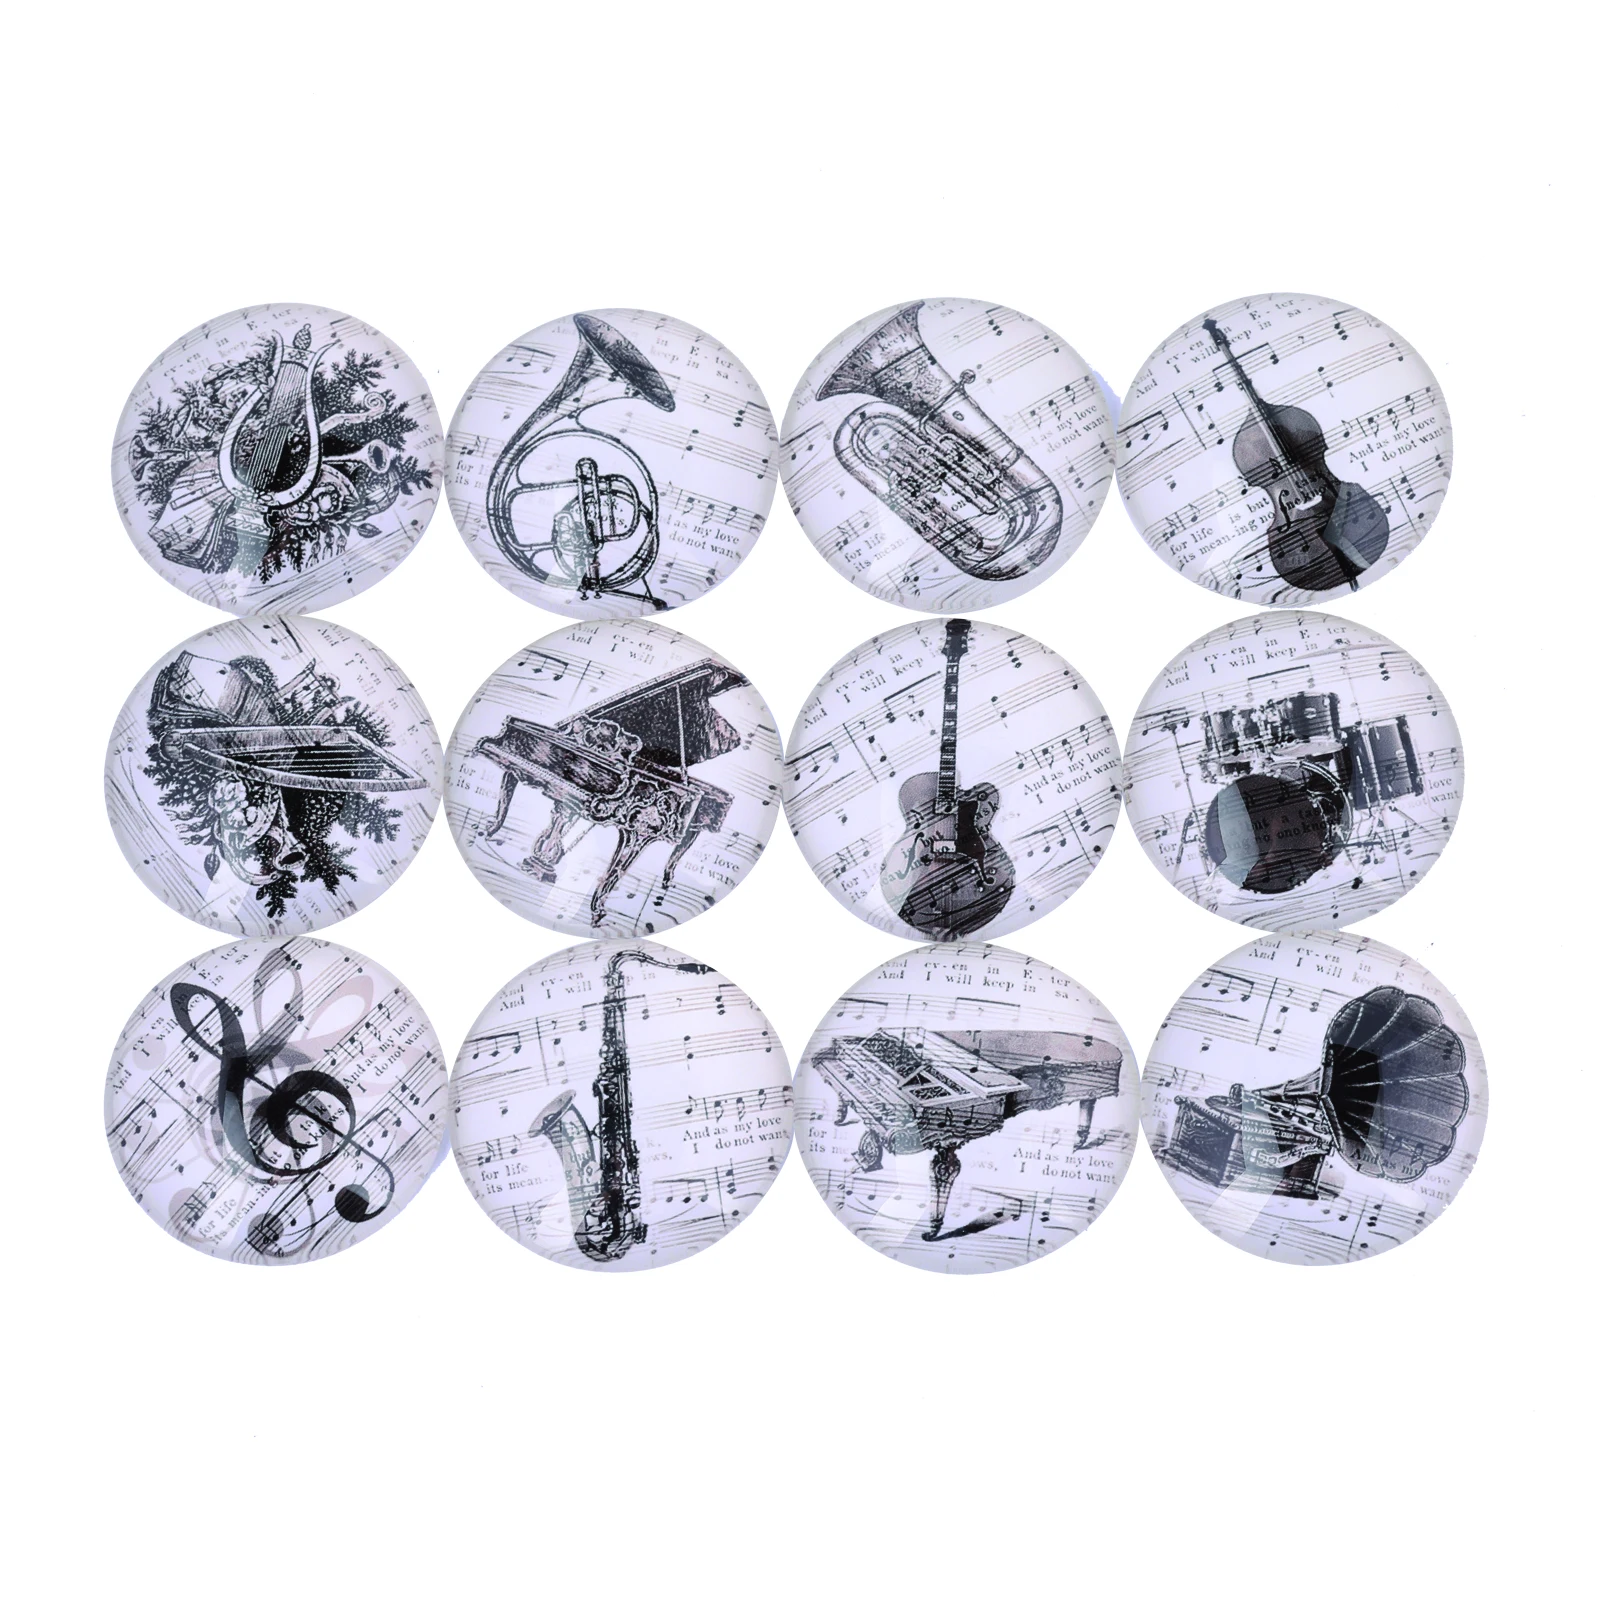 Onwear-instrumento musical vintage para hacer fotos, cabujones redondos de cristal de 12mm, 20mm, 25mm y 30mm, joyería artesanal para pendientes, colgantes